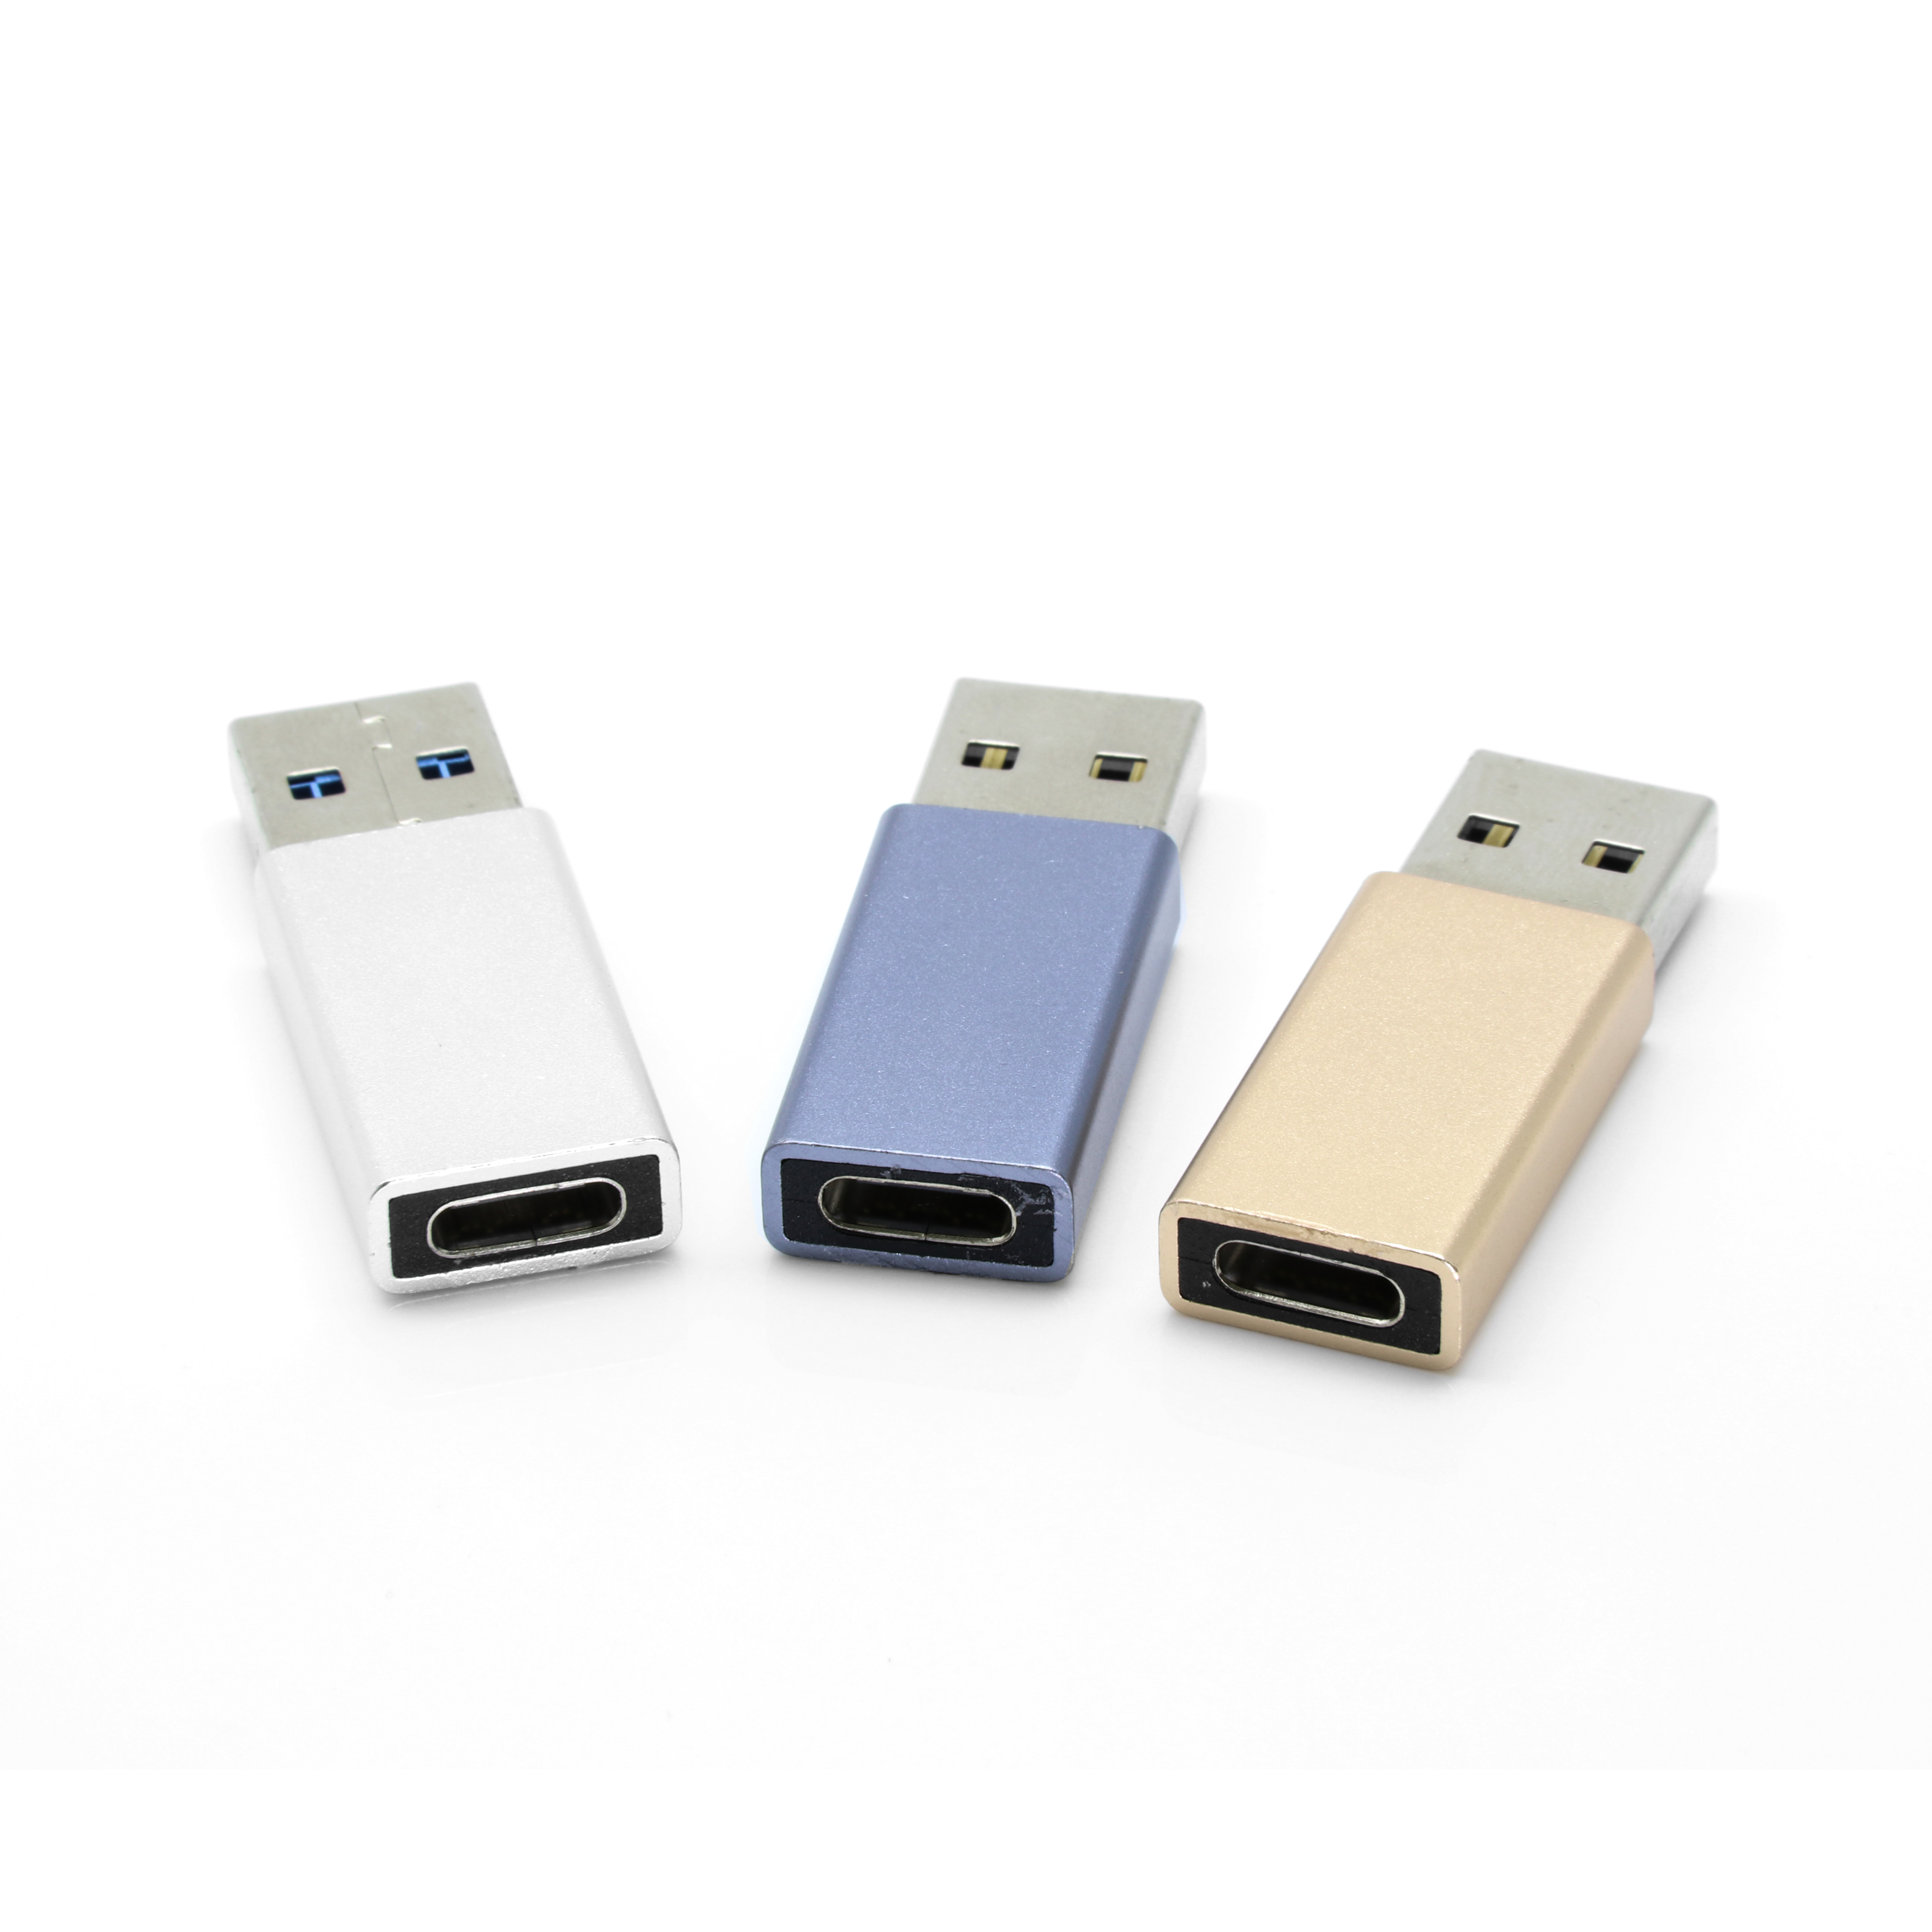 Metal portátil USB 3.0 tipo C macho a adaptador hembra USB Converter